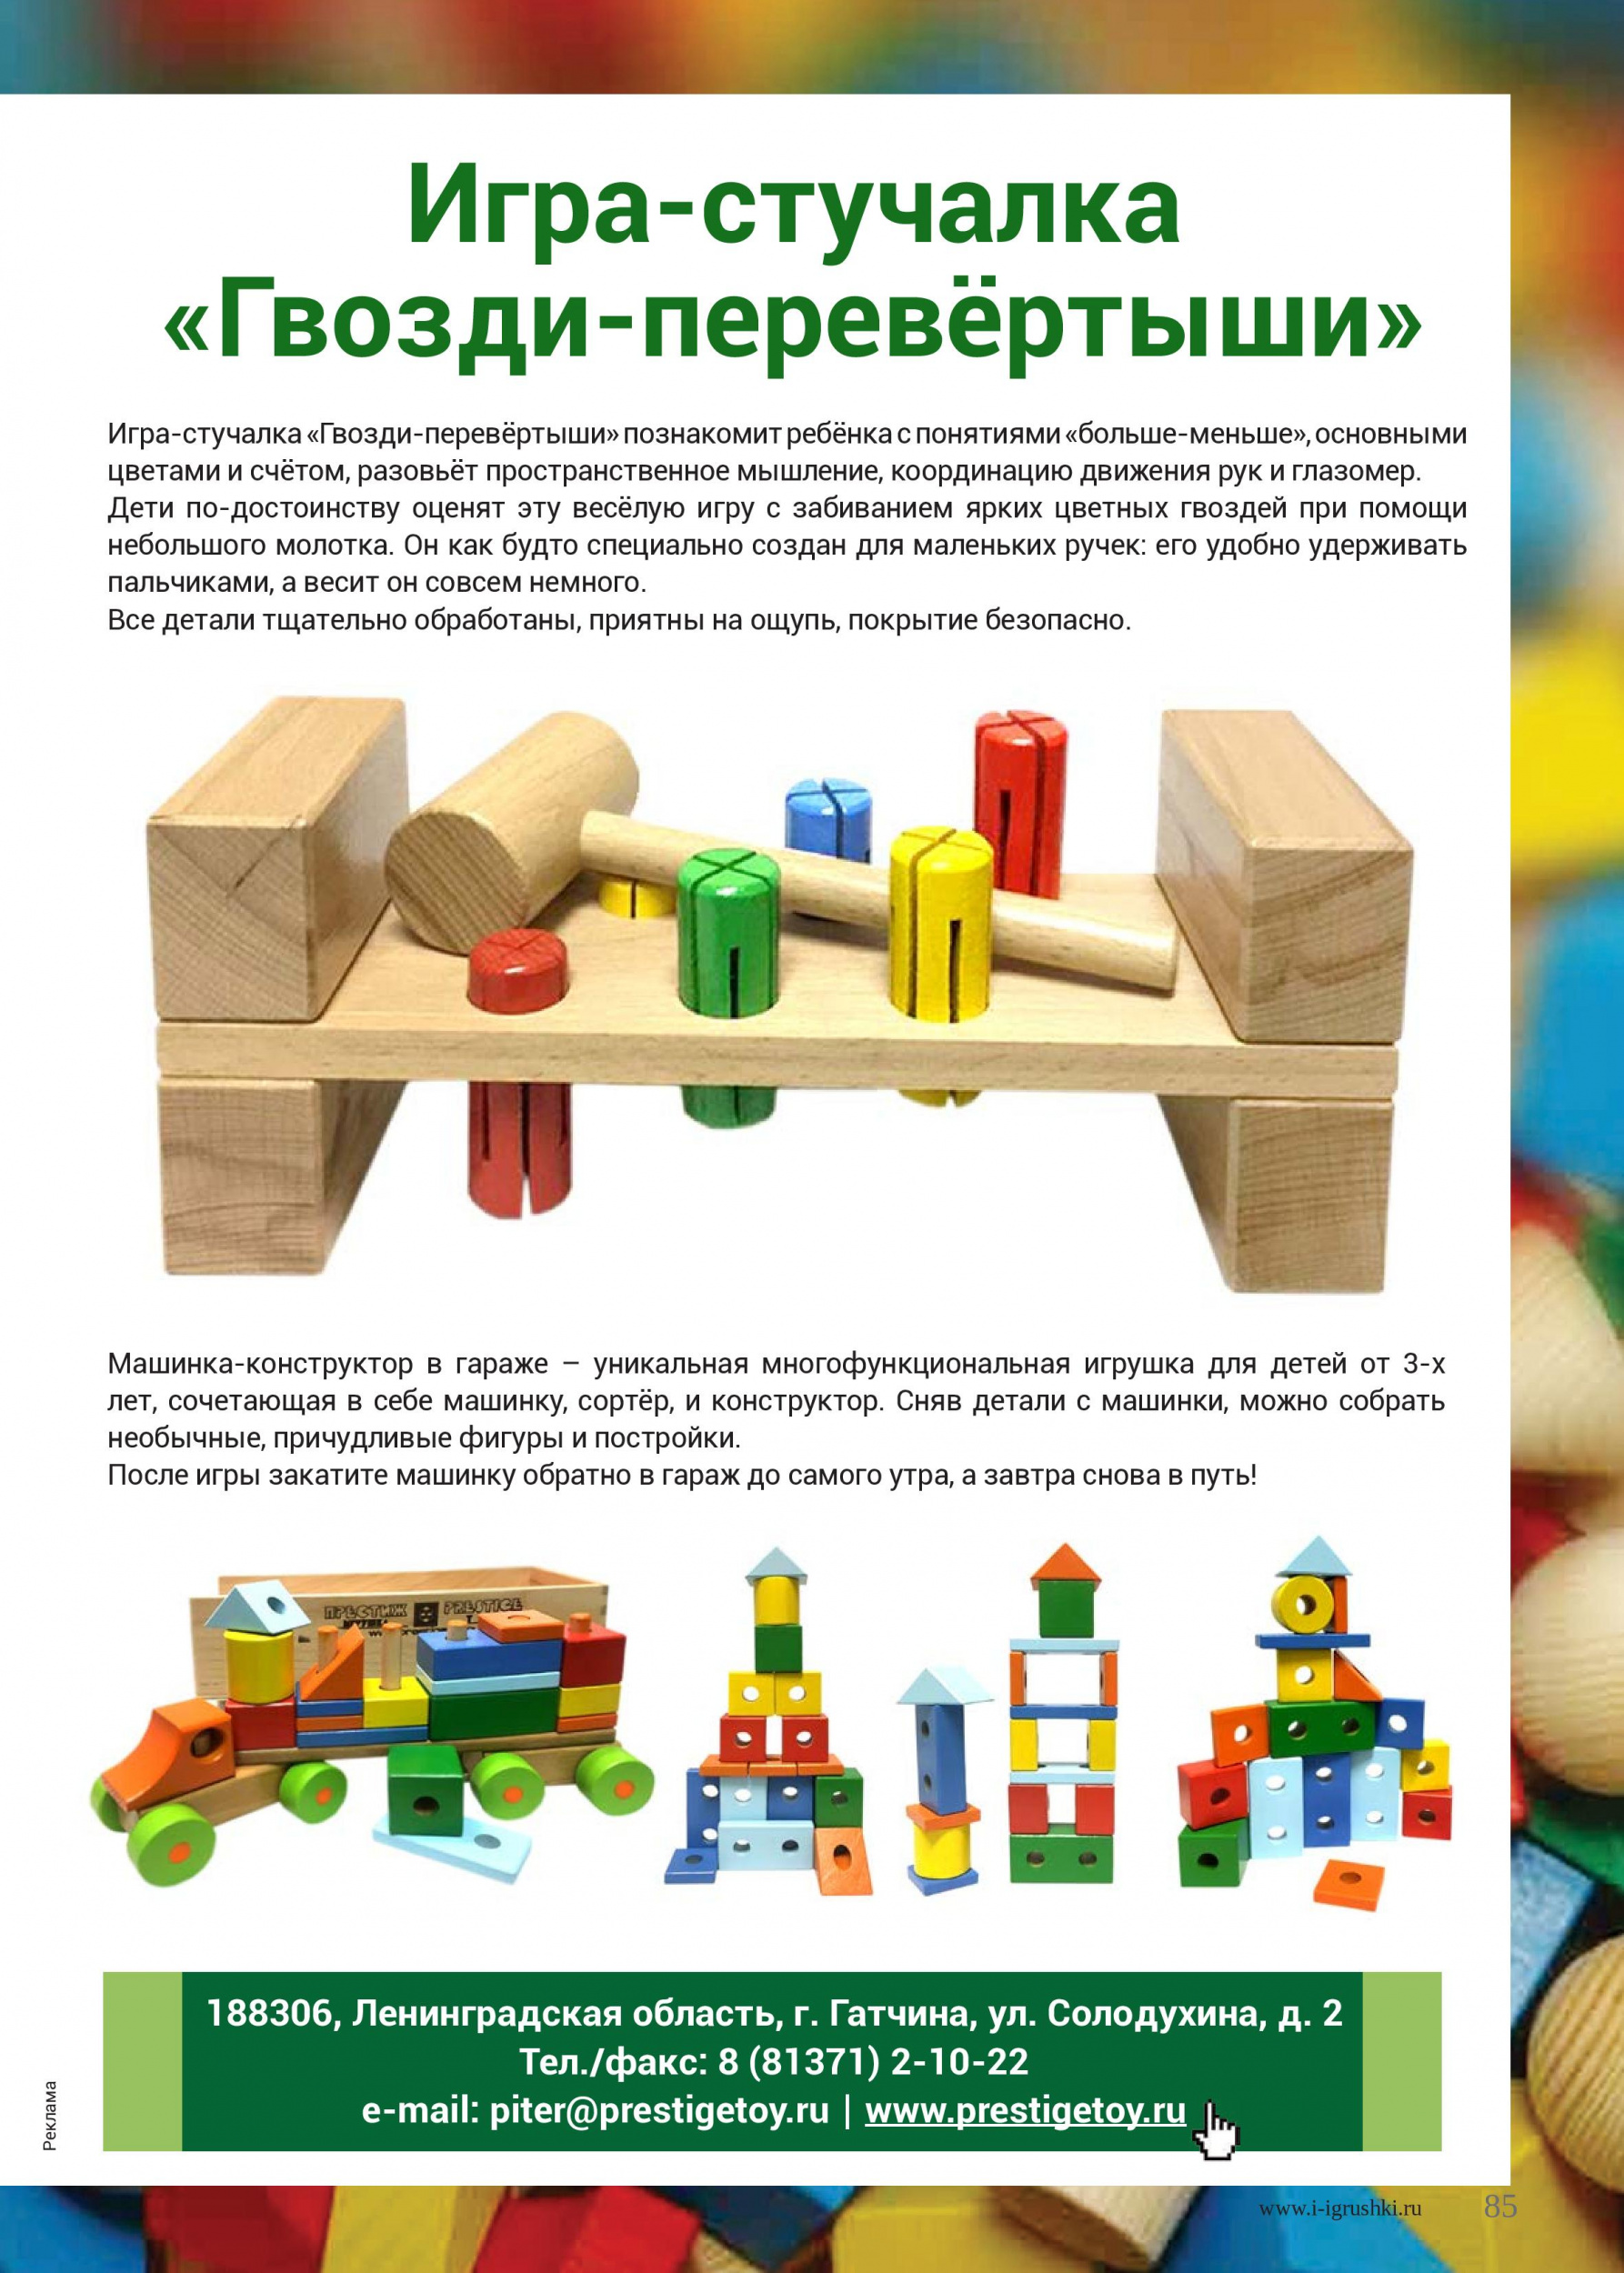 Отечественная компания по производству деревянной игрушки 